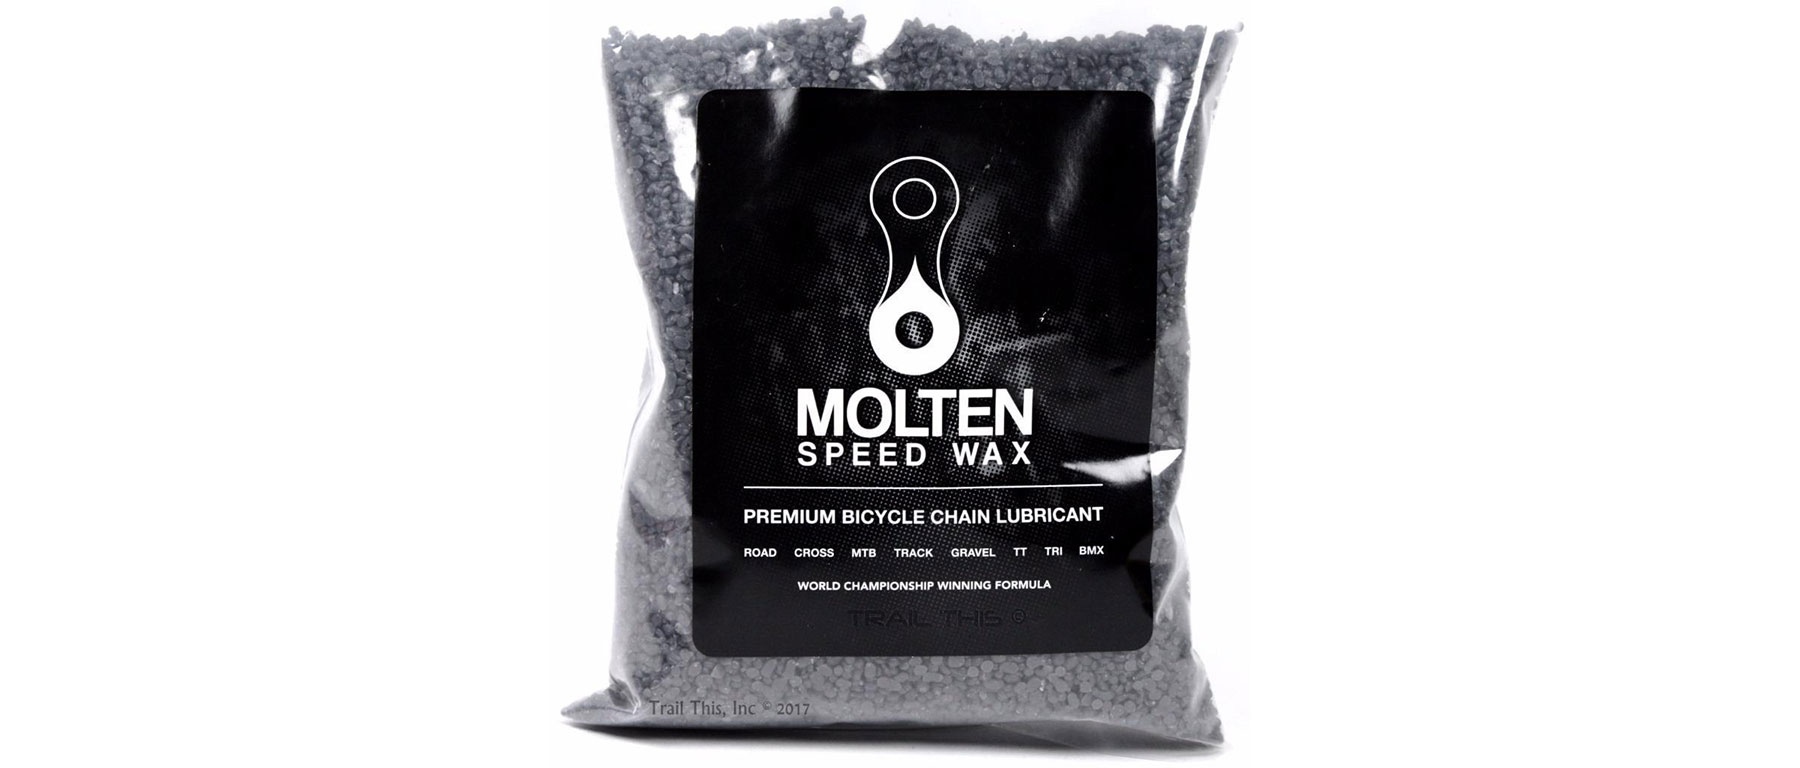 Molten Speed Wax Chain Wax